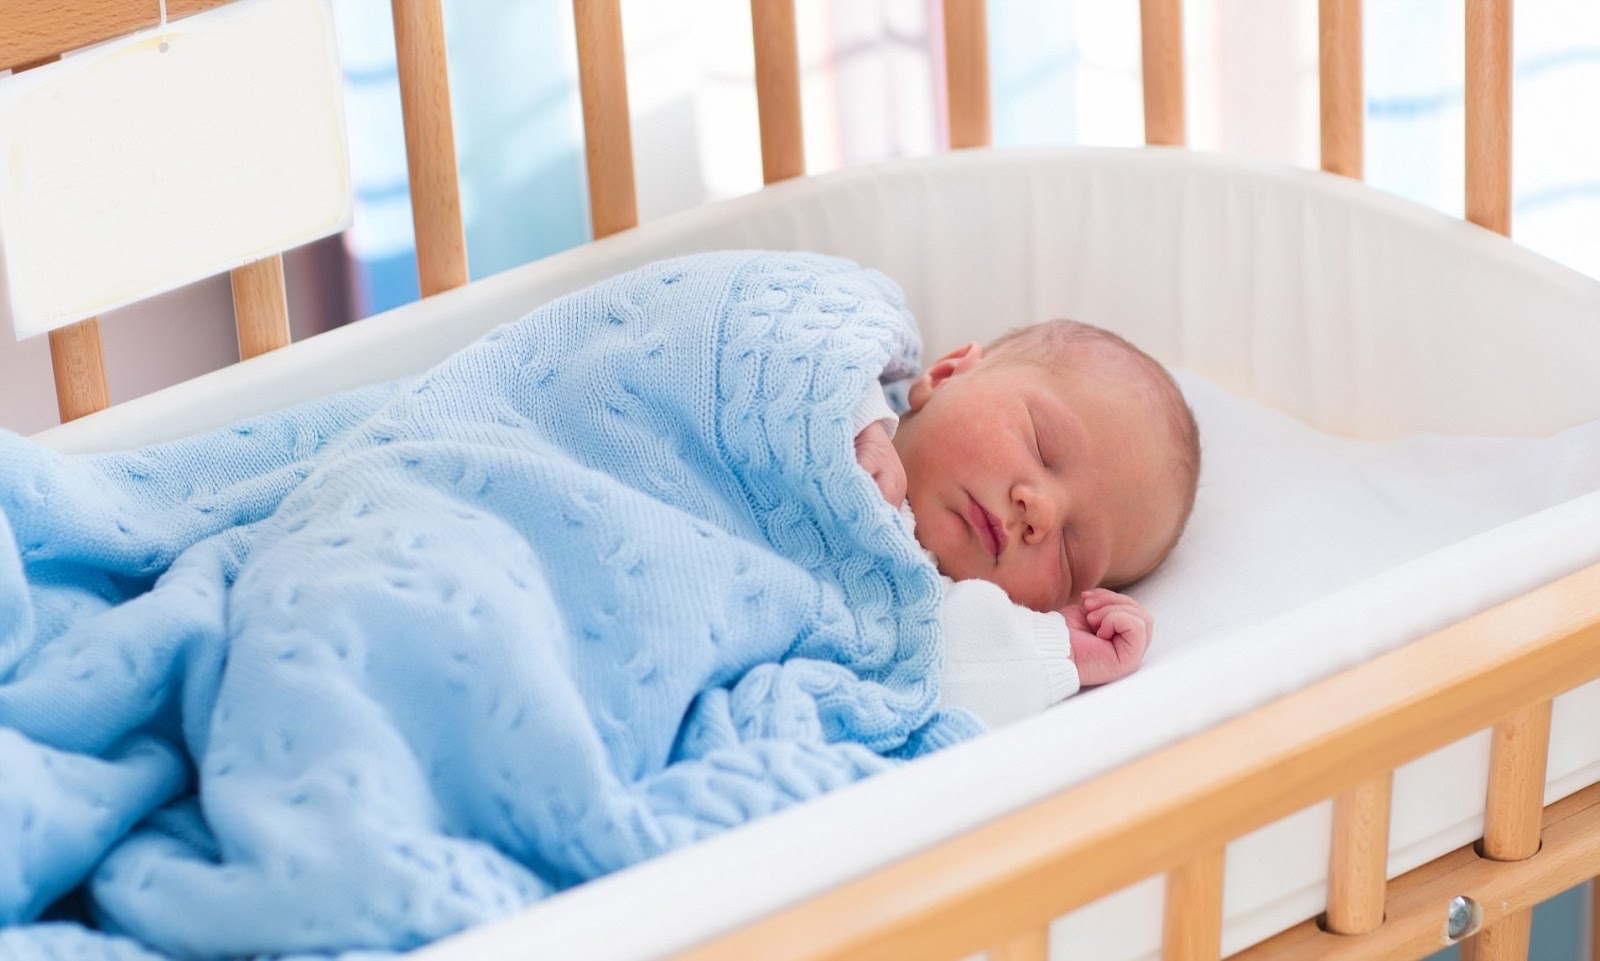 NÚT TRẮNG - Công cụ đắc lực giúp bé ngủ ngon